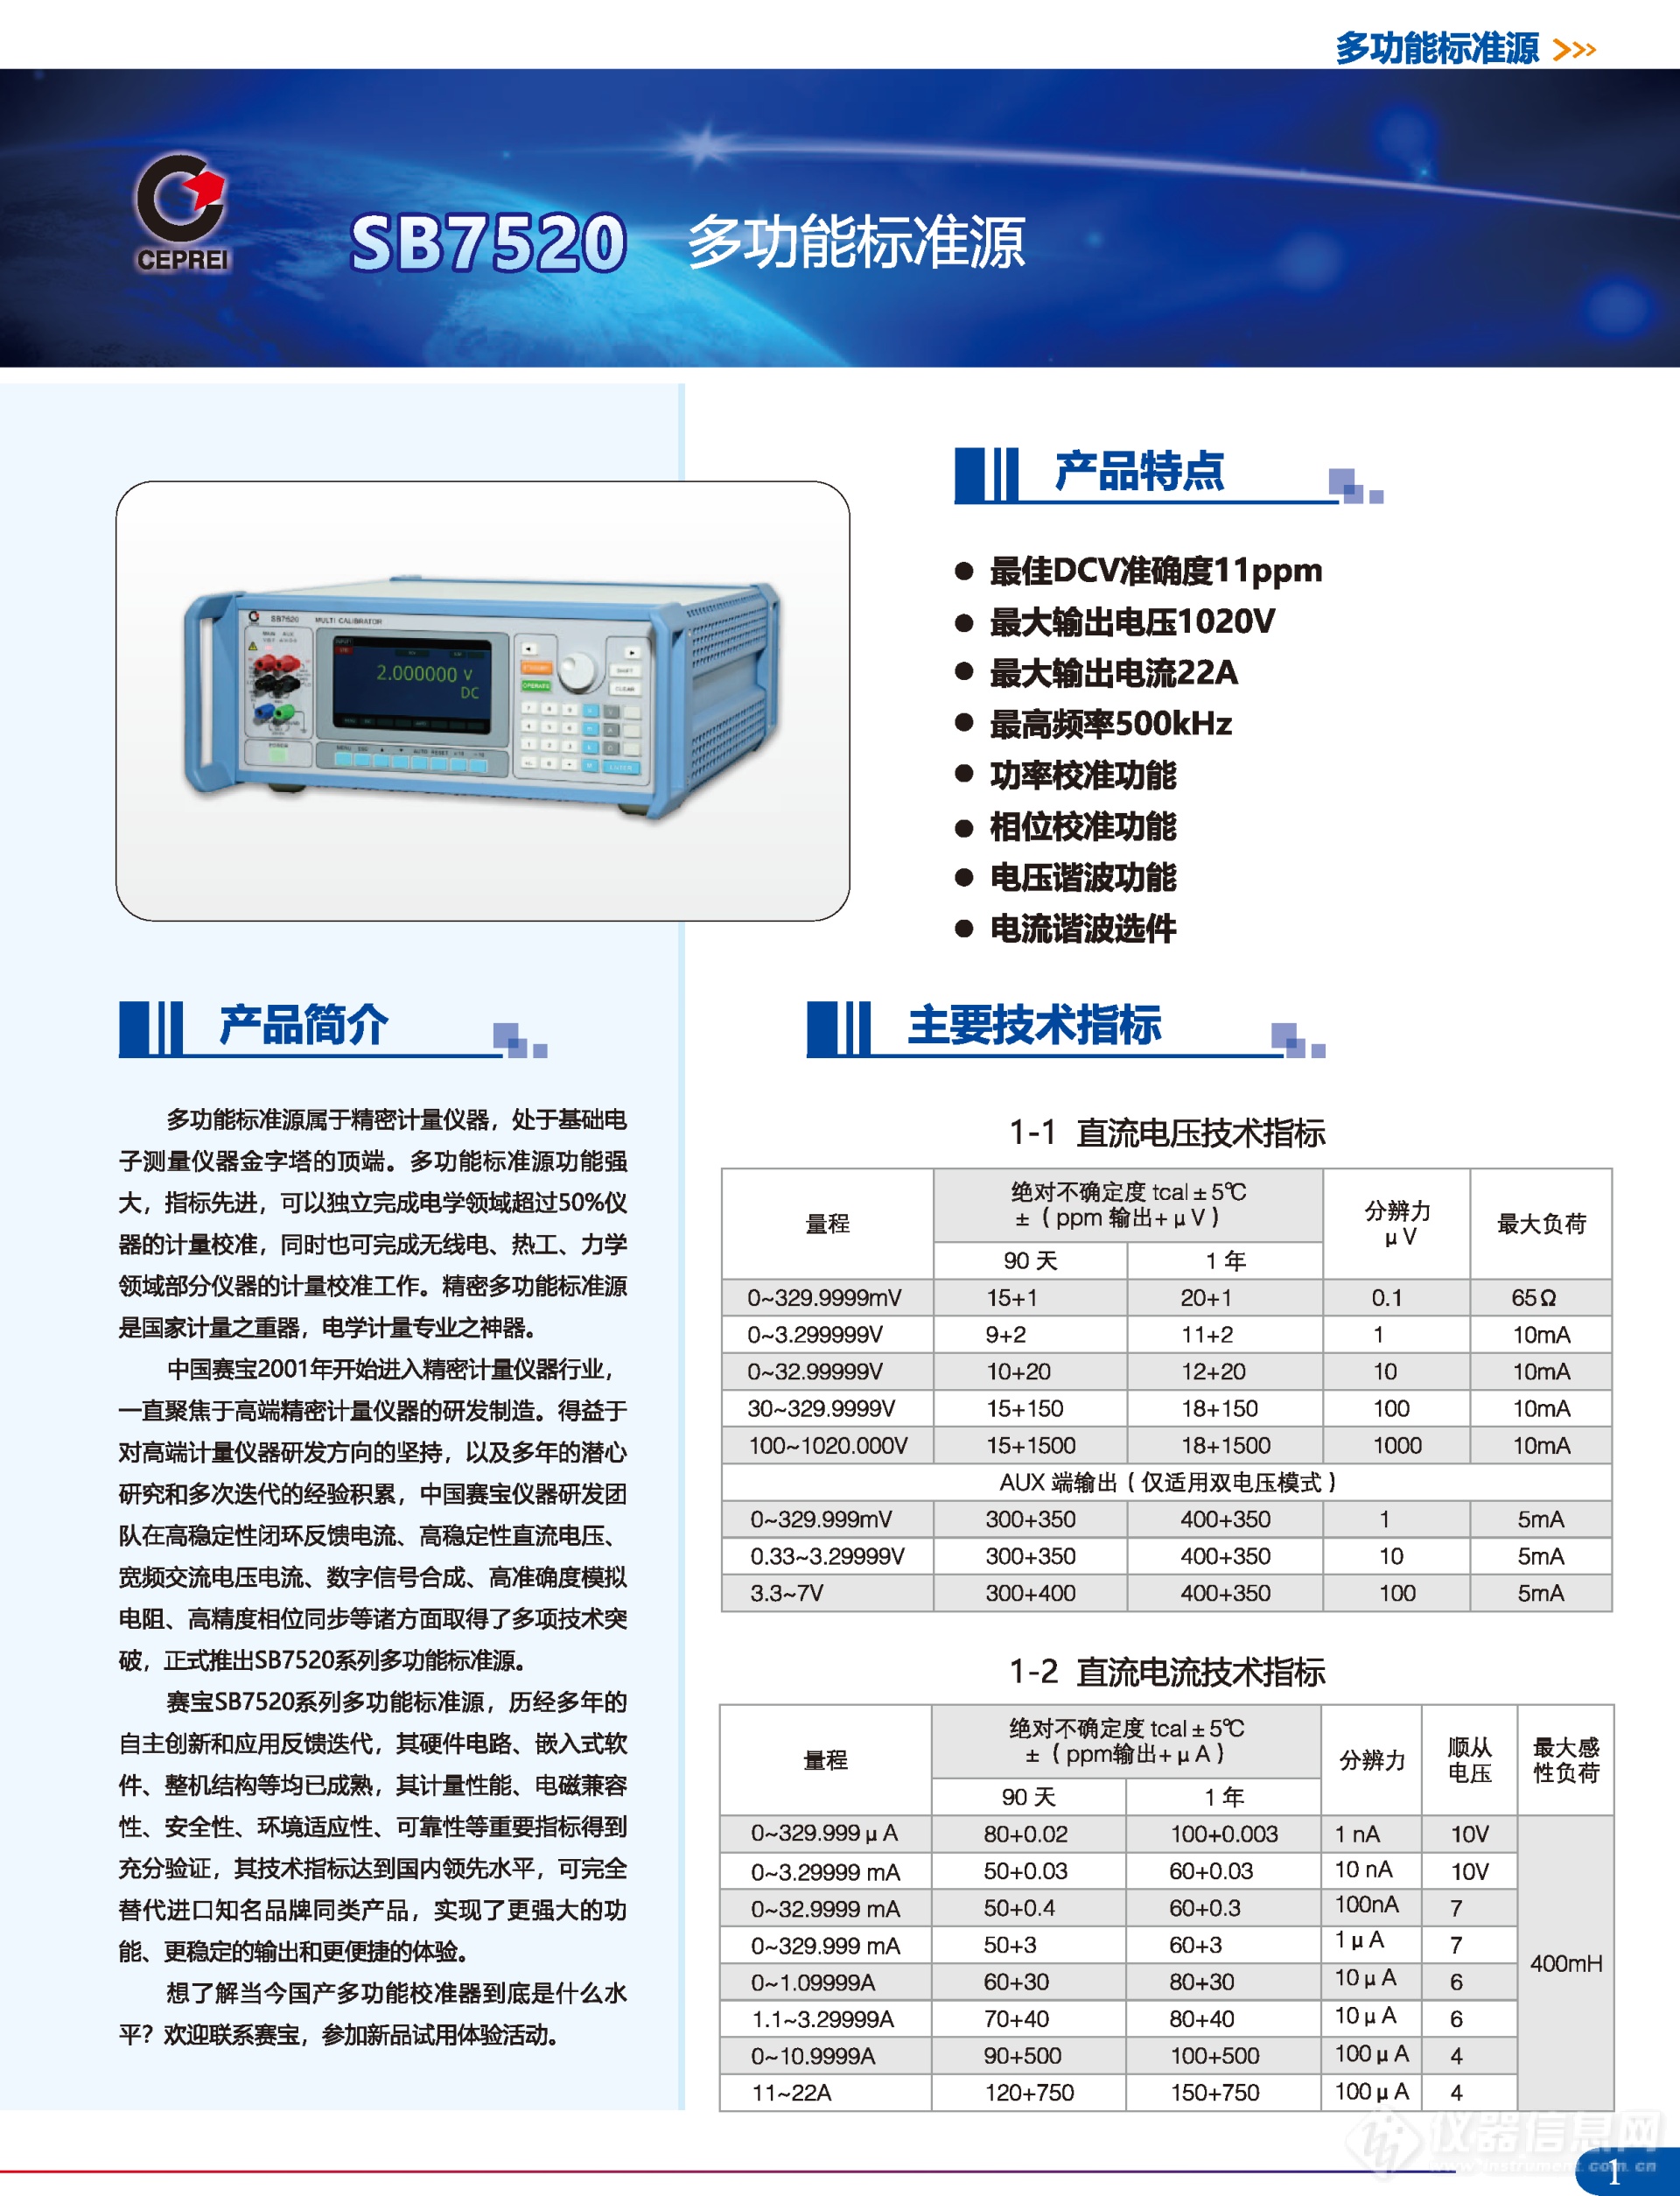 广州赛宝计量仪器产品彩页-202105版_页面_05.png